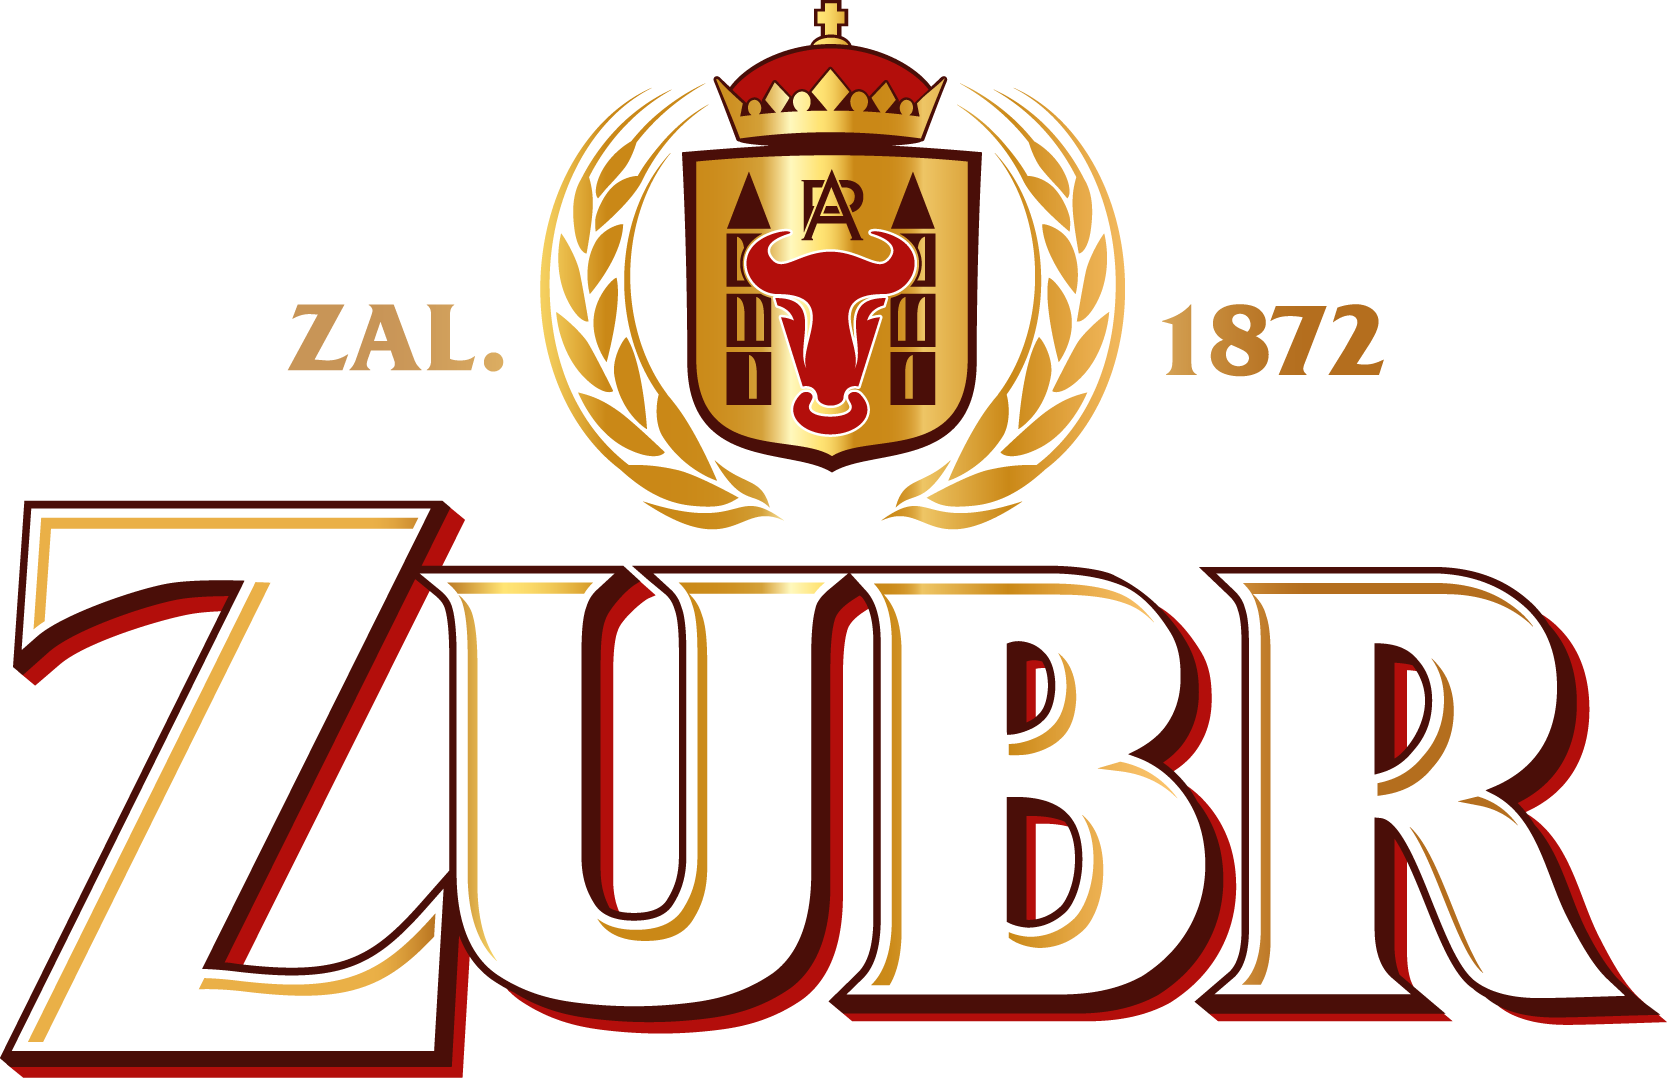 logo_zubr.png, 294kB